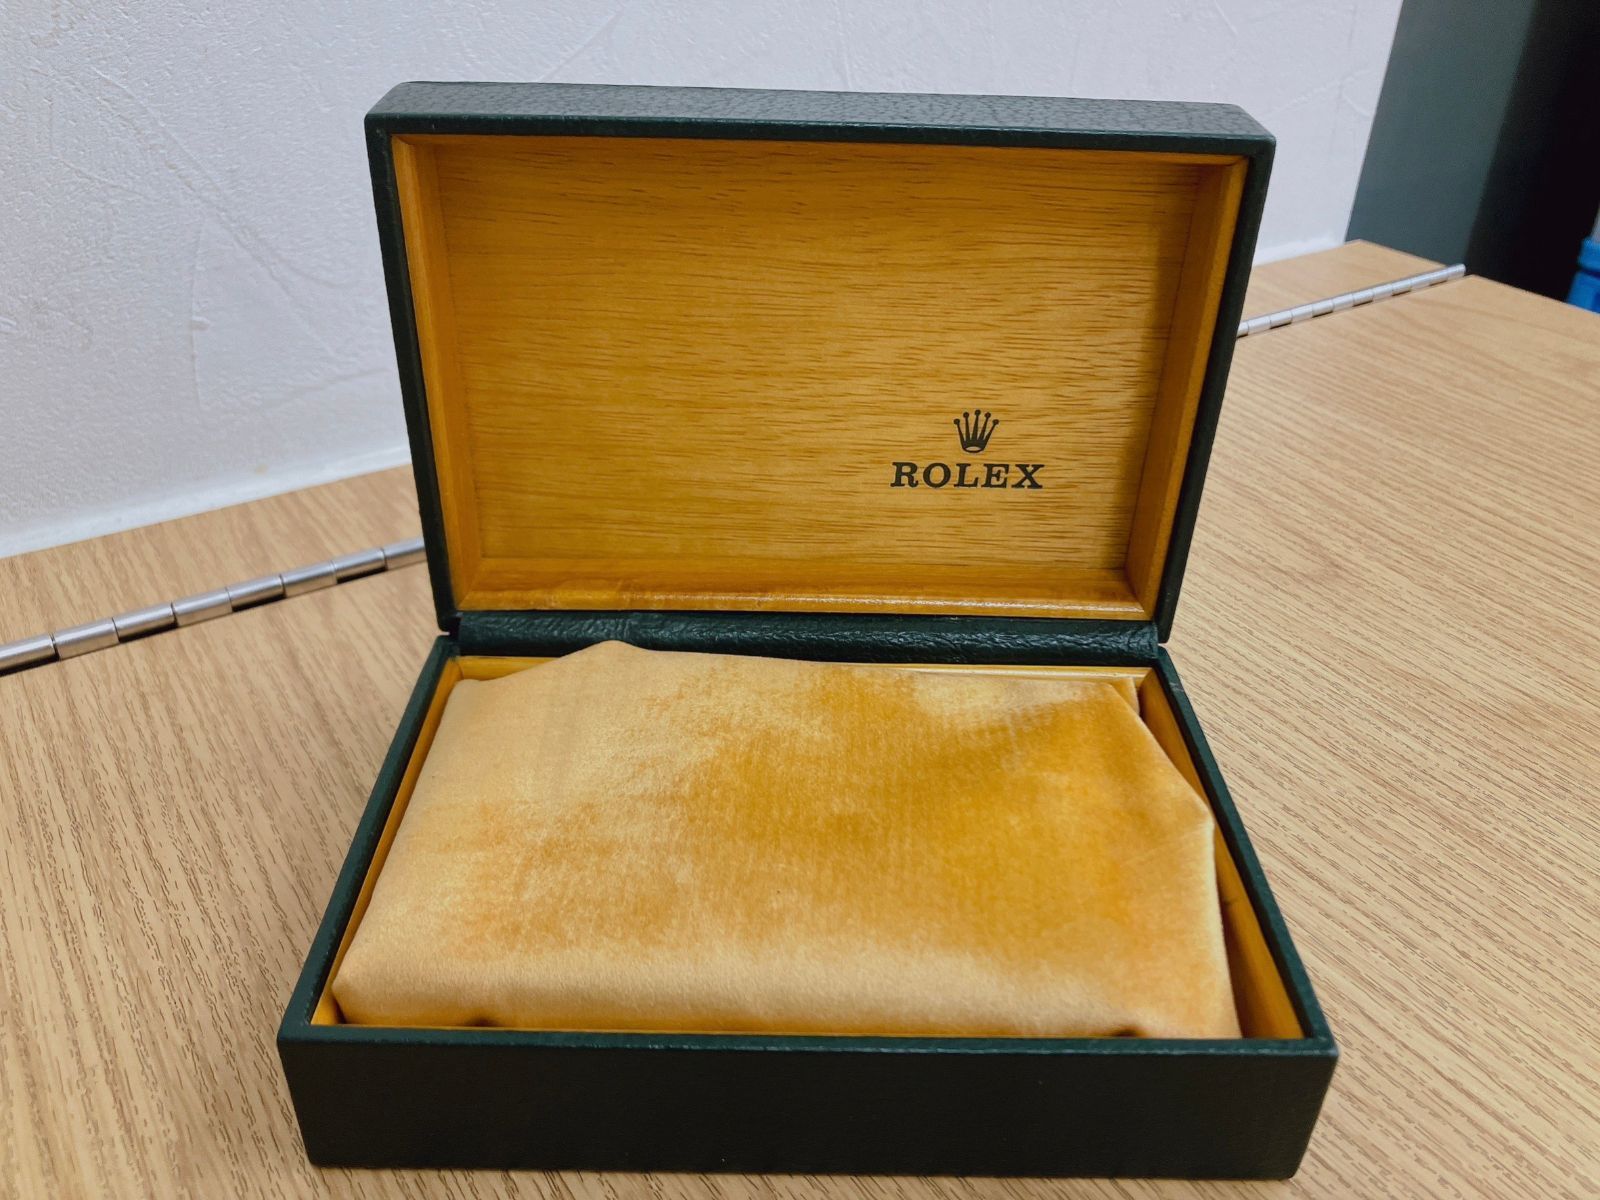 ロレックス ROLEX 空箱 ケース 保存箱 腕時計 ボックス グリーン